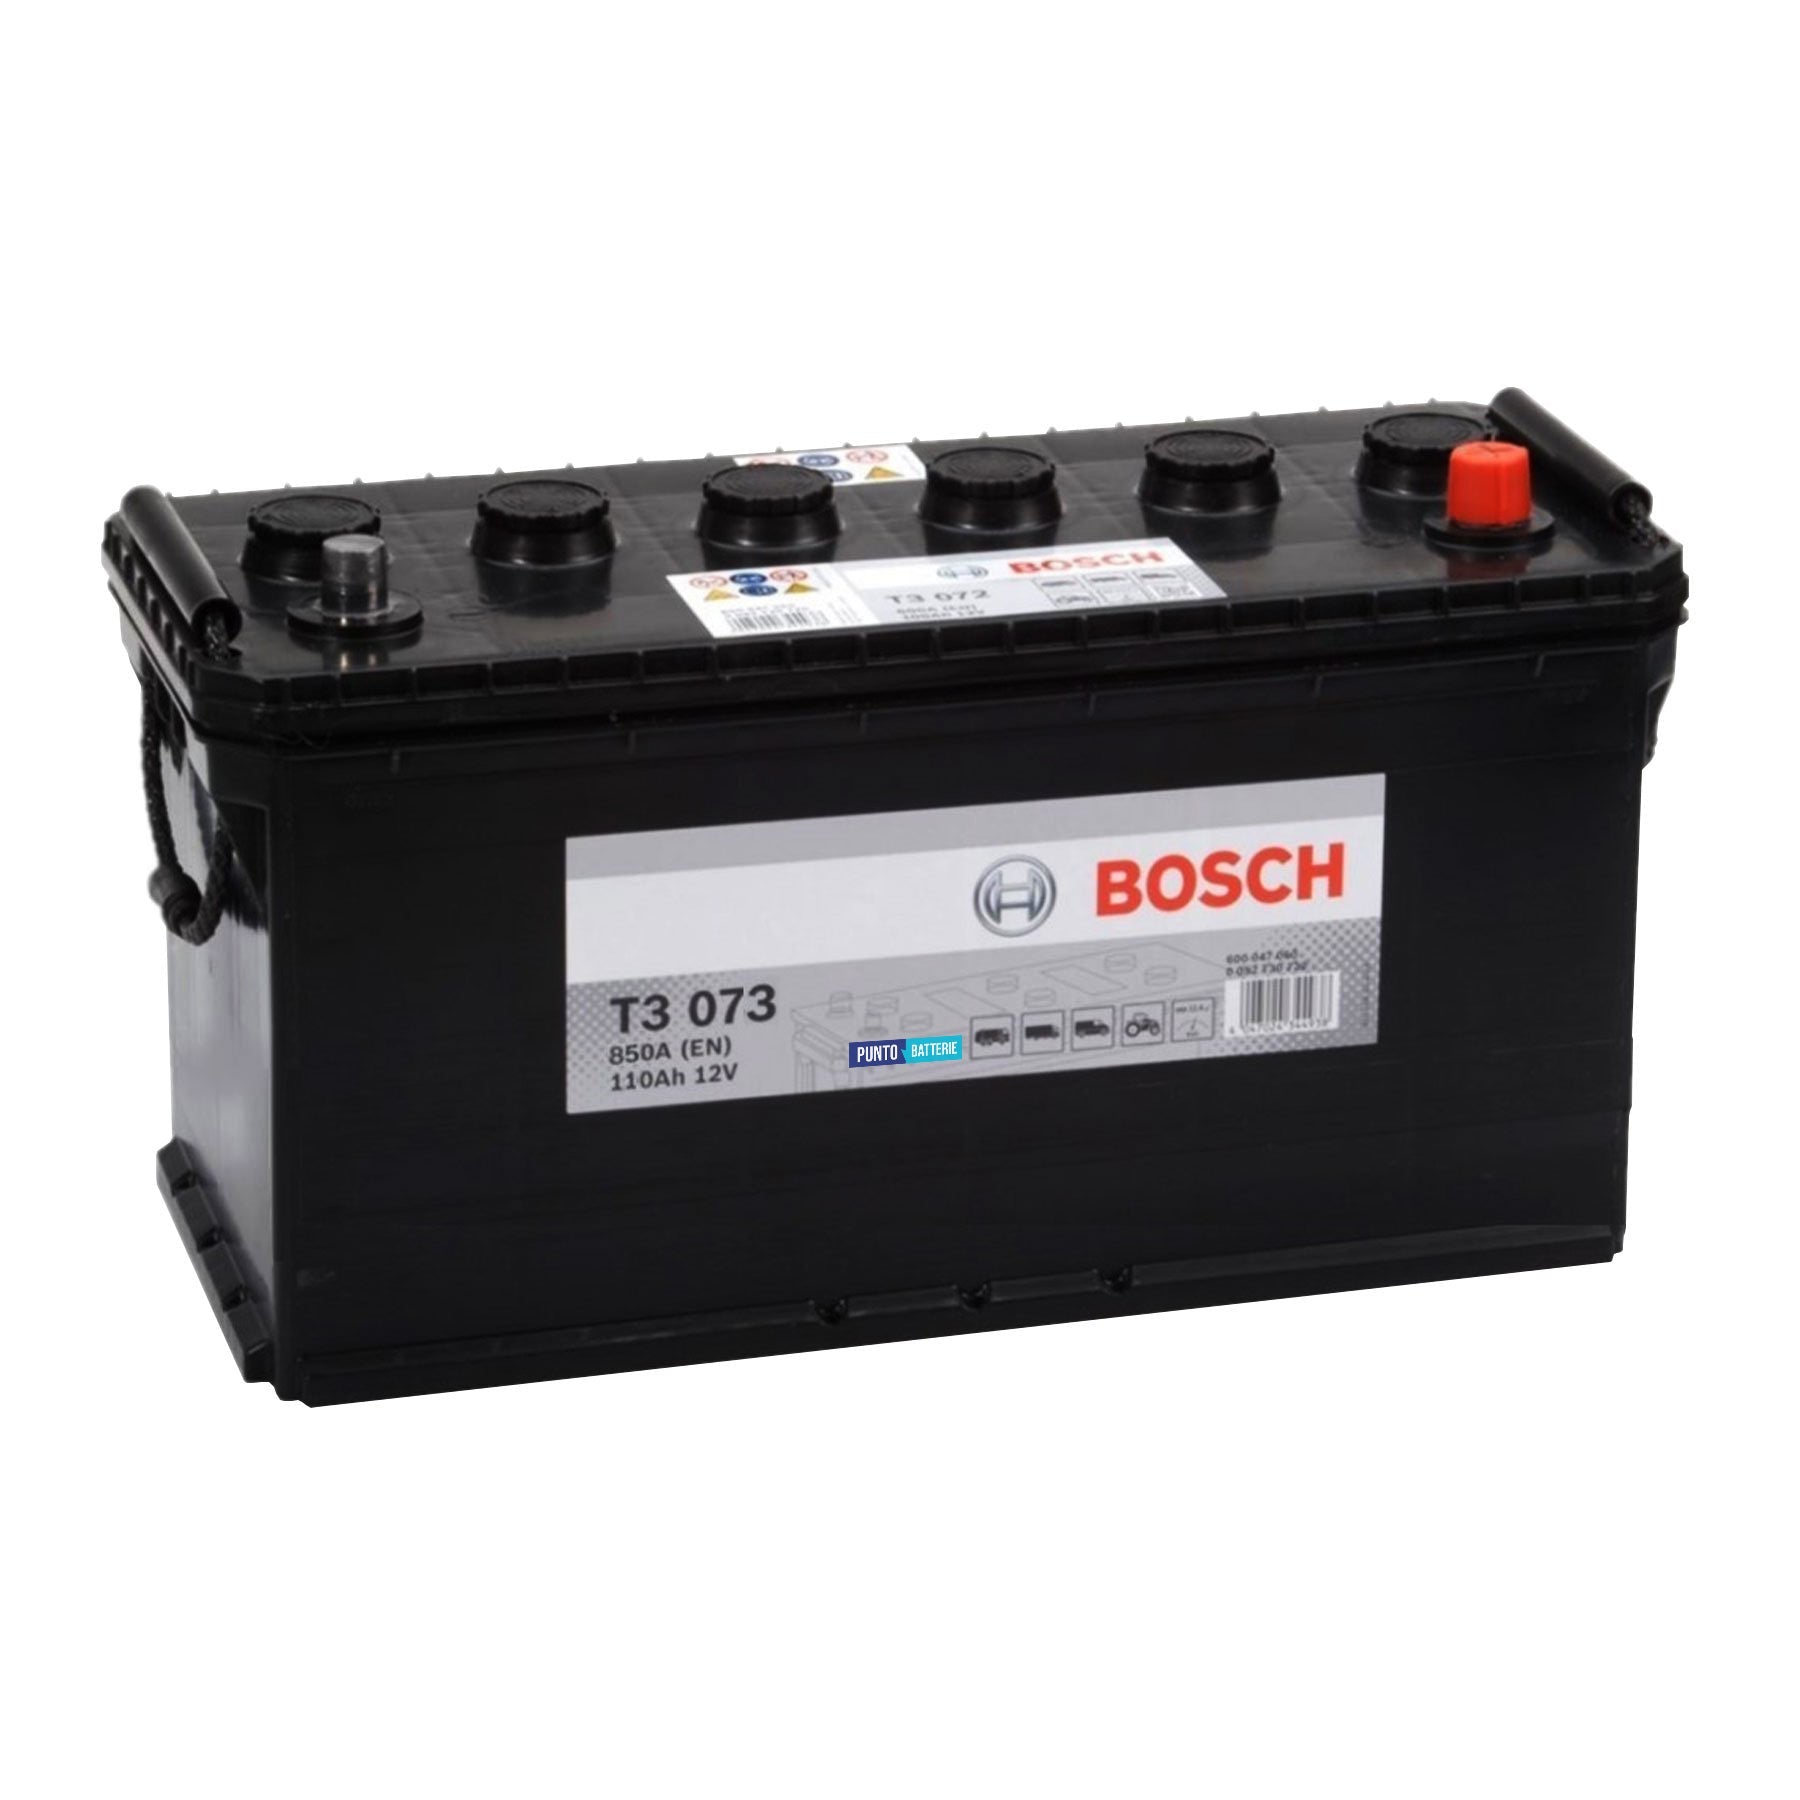 Batteria originale Bosch T3 T3073, dimensioni 412 x 175 x 219, polo positivo a destra, 12 volt, 110 amperora, 850 ampere. Batteria per camion e veicoli pesanti.